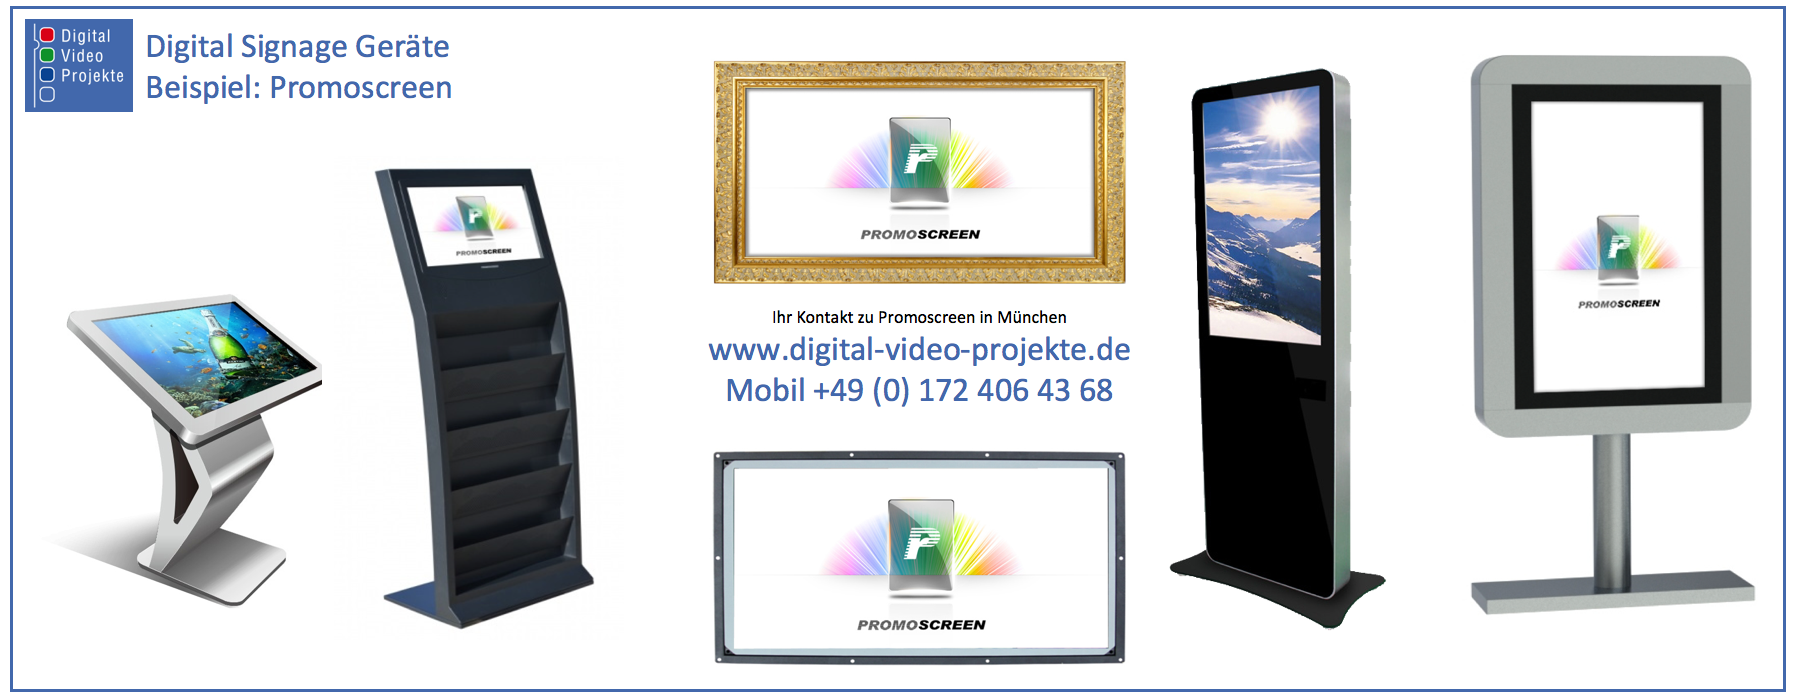 Digital Signage am Beispiel Promoscreen (Bilder zeigen Produkte von Promoscreen)